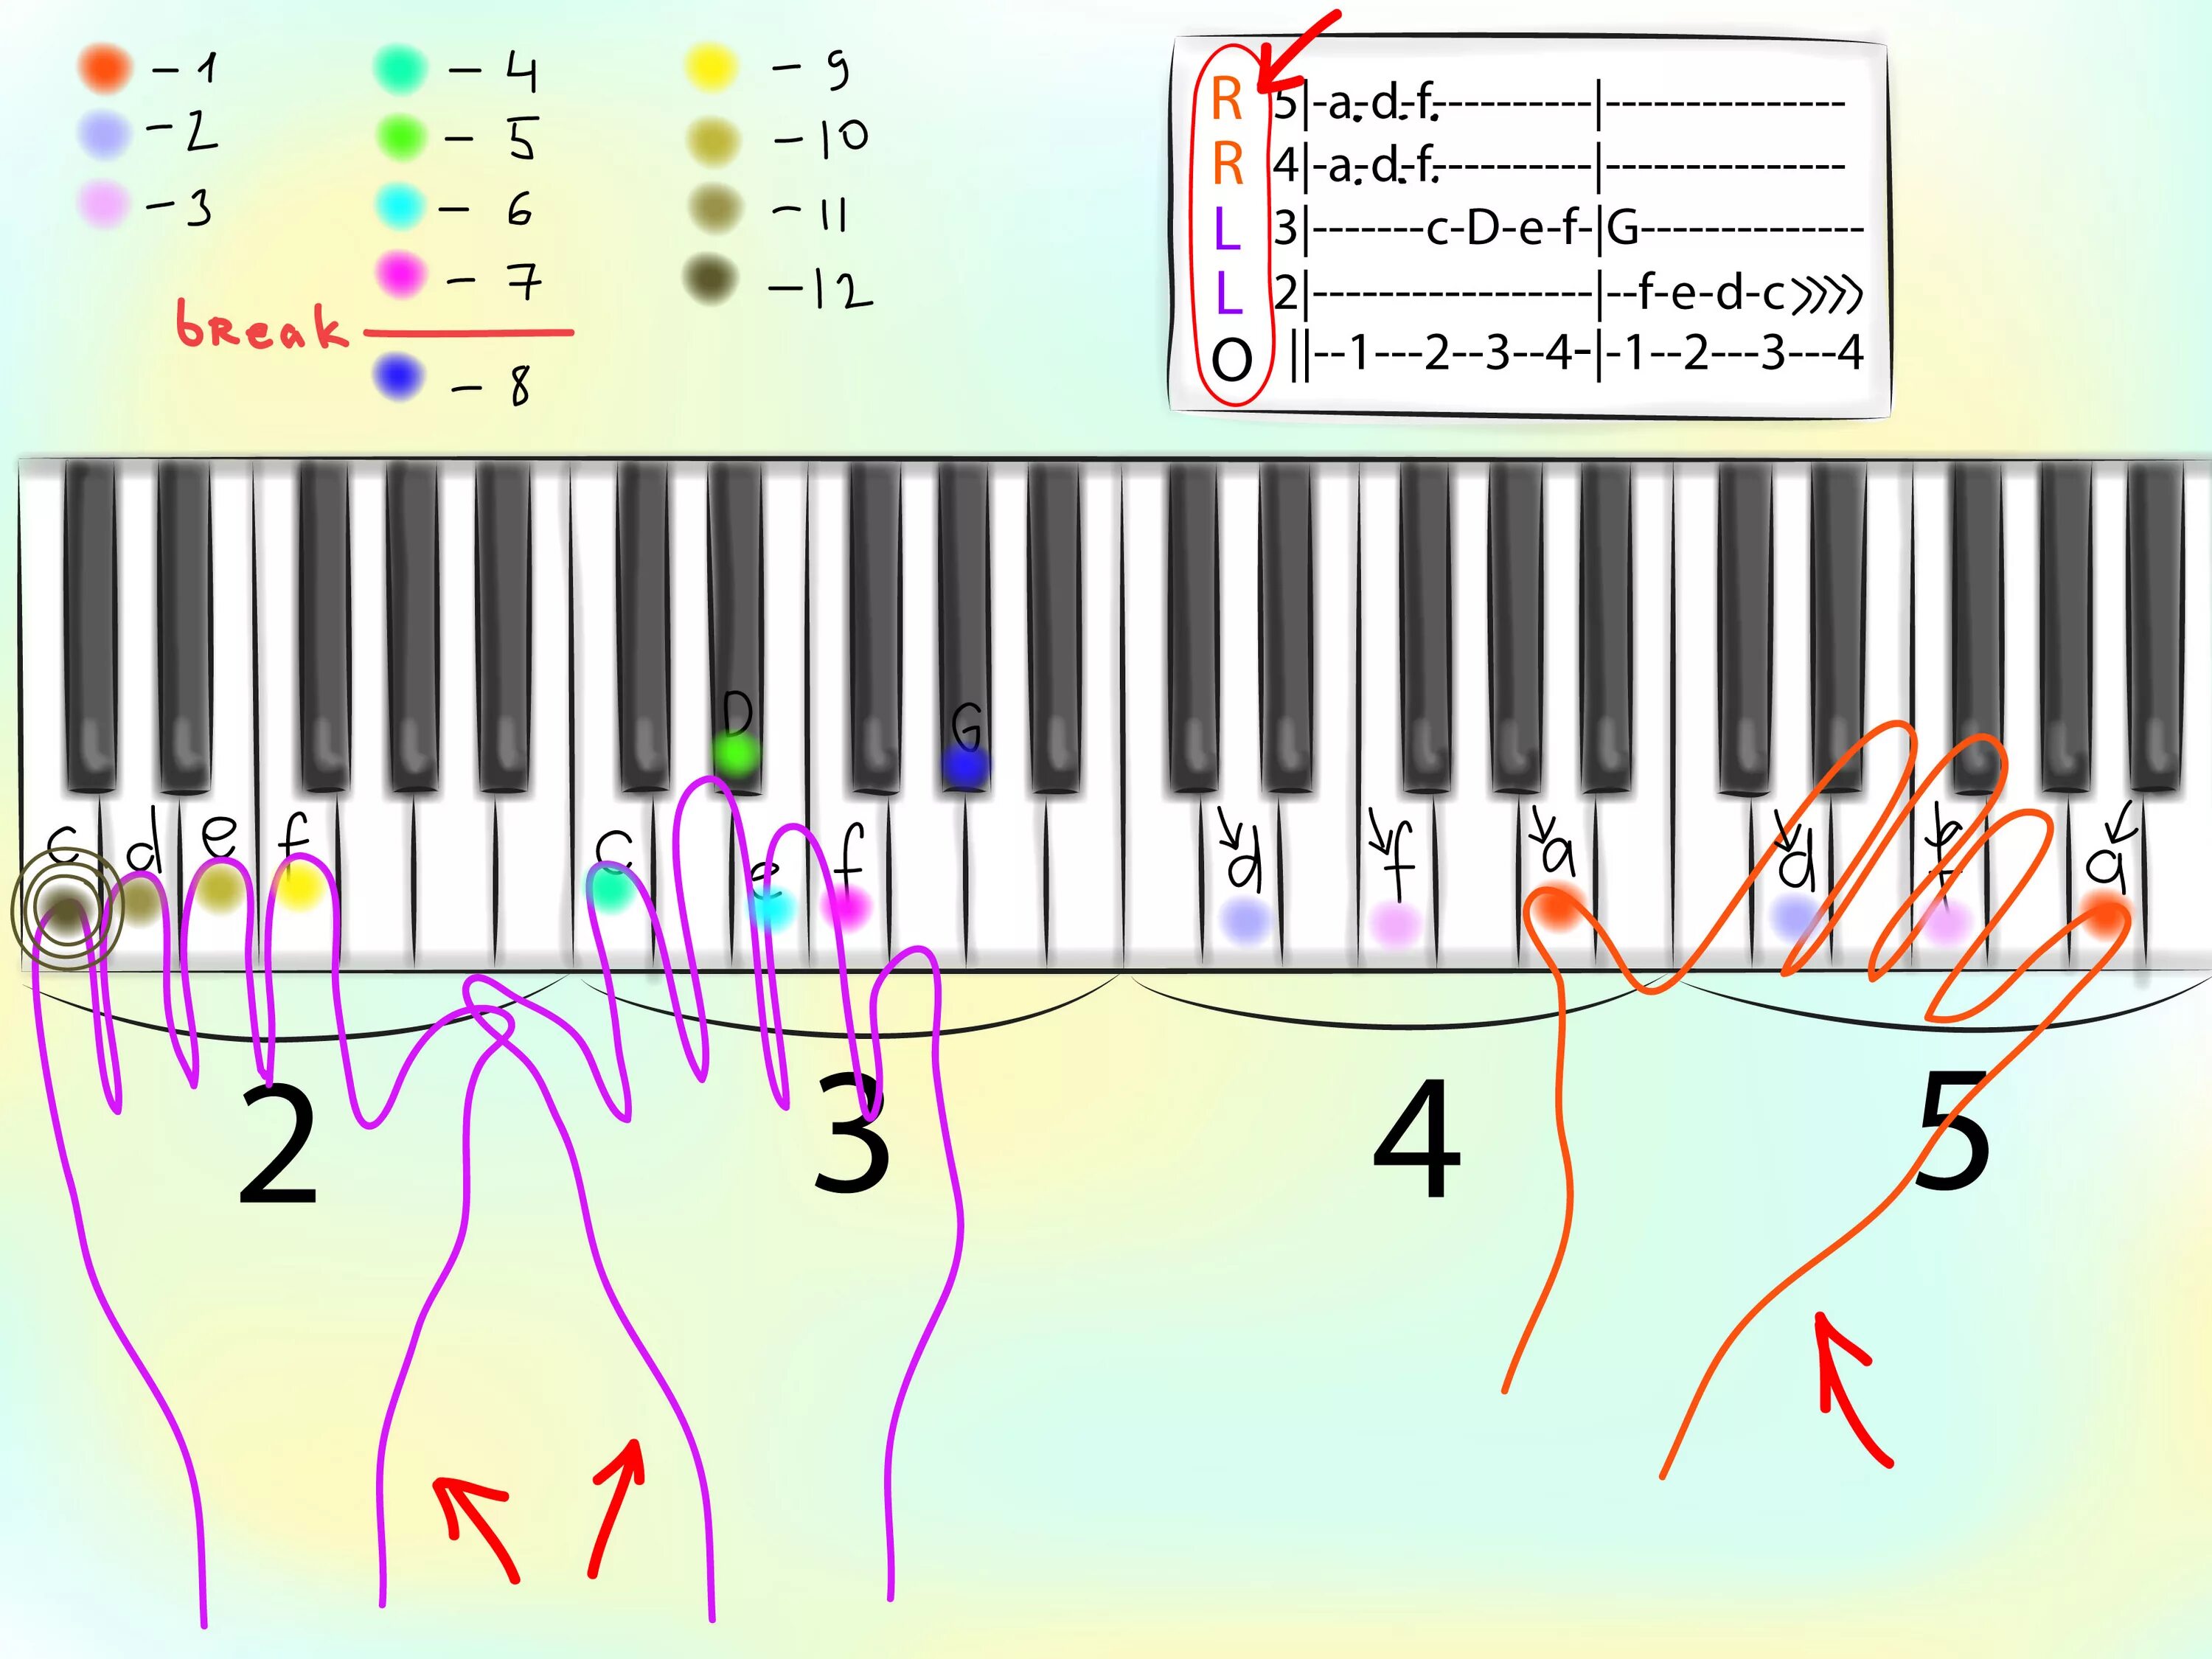 Быстро играть ноты. Как научиться играть на пианино. Схема игры на пианино. Схема пианино. Схема нот на пианино для начинающих.